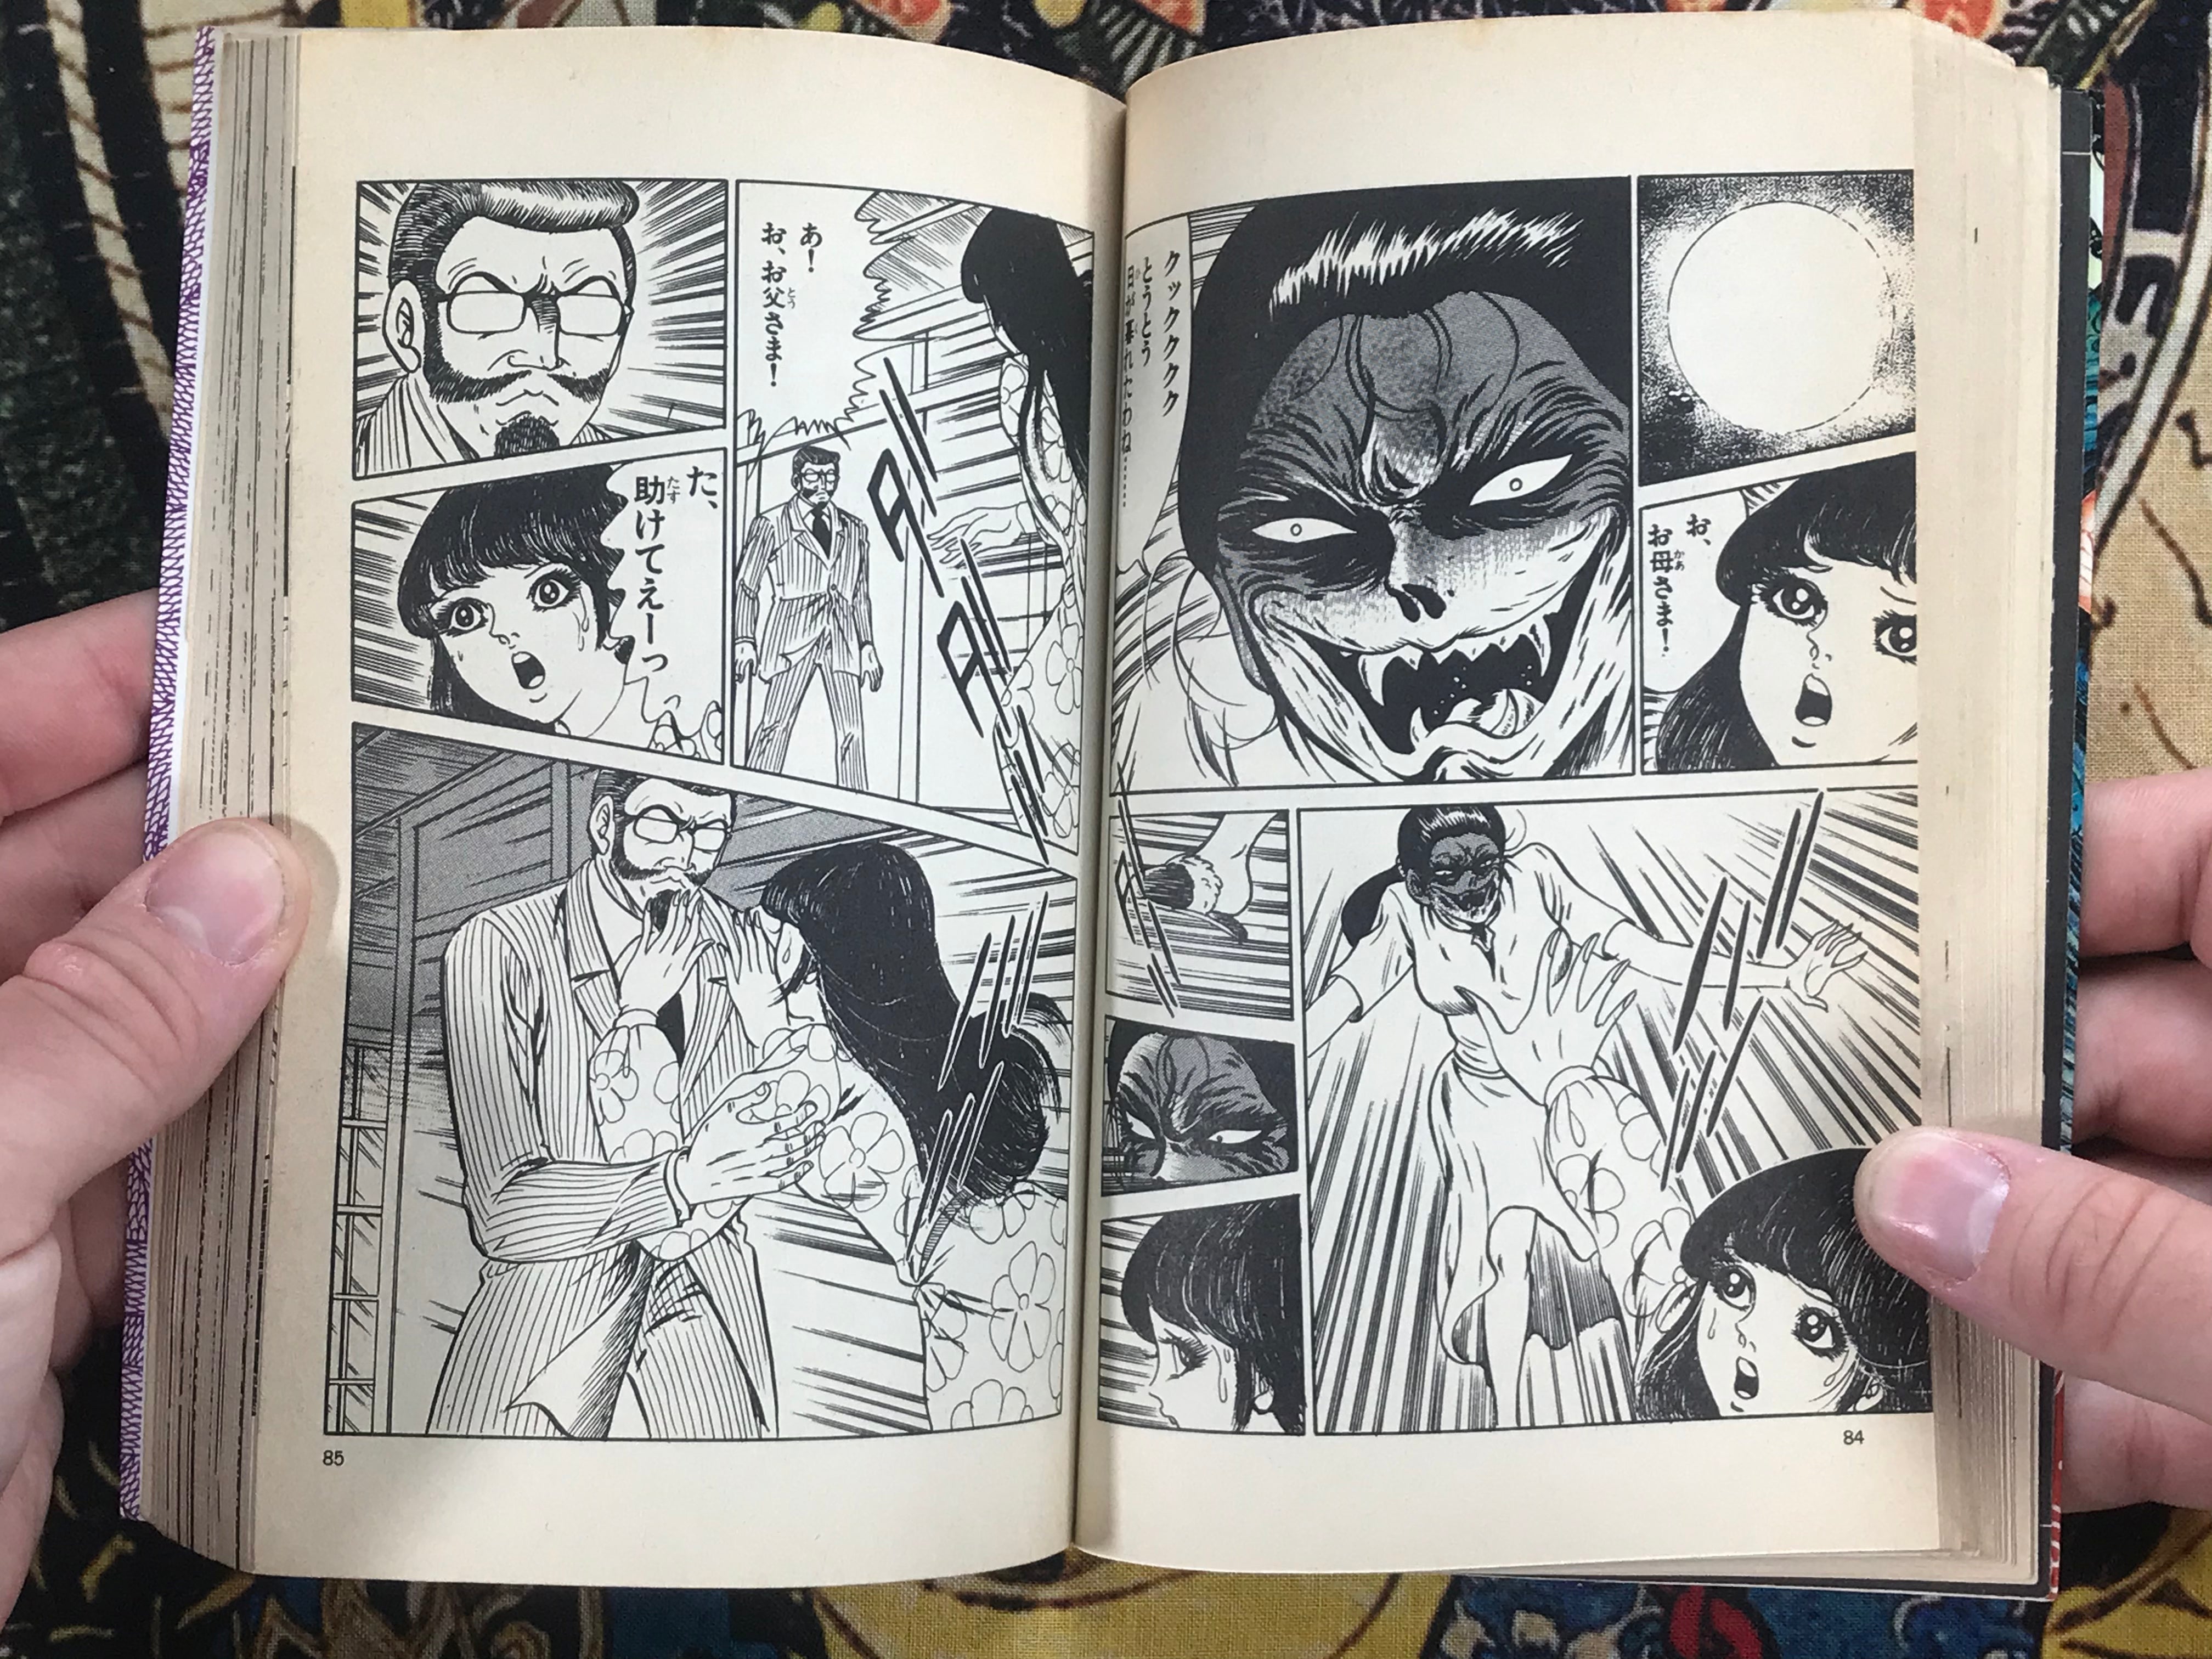 Where the Red Snake Girl Lives 2 Volume Set by Monsieur Tanaka (1982)